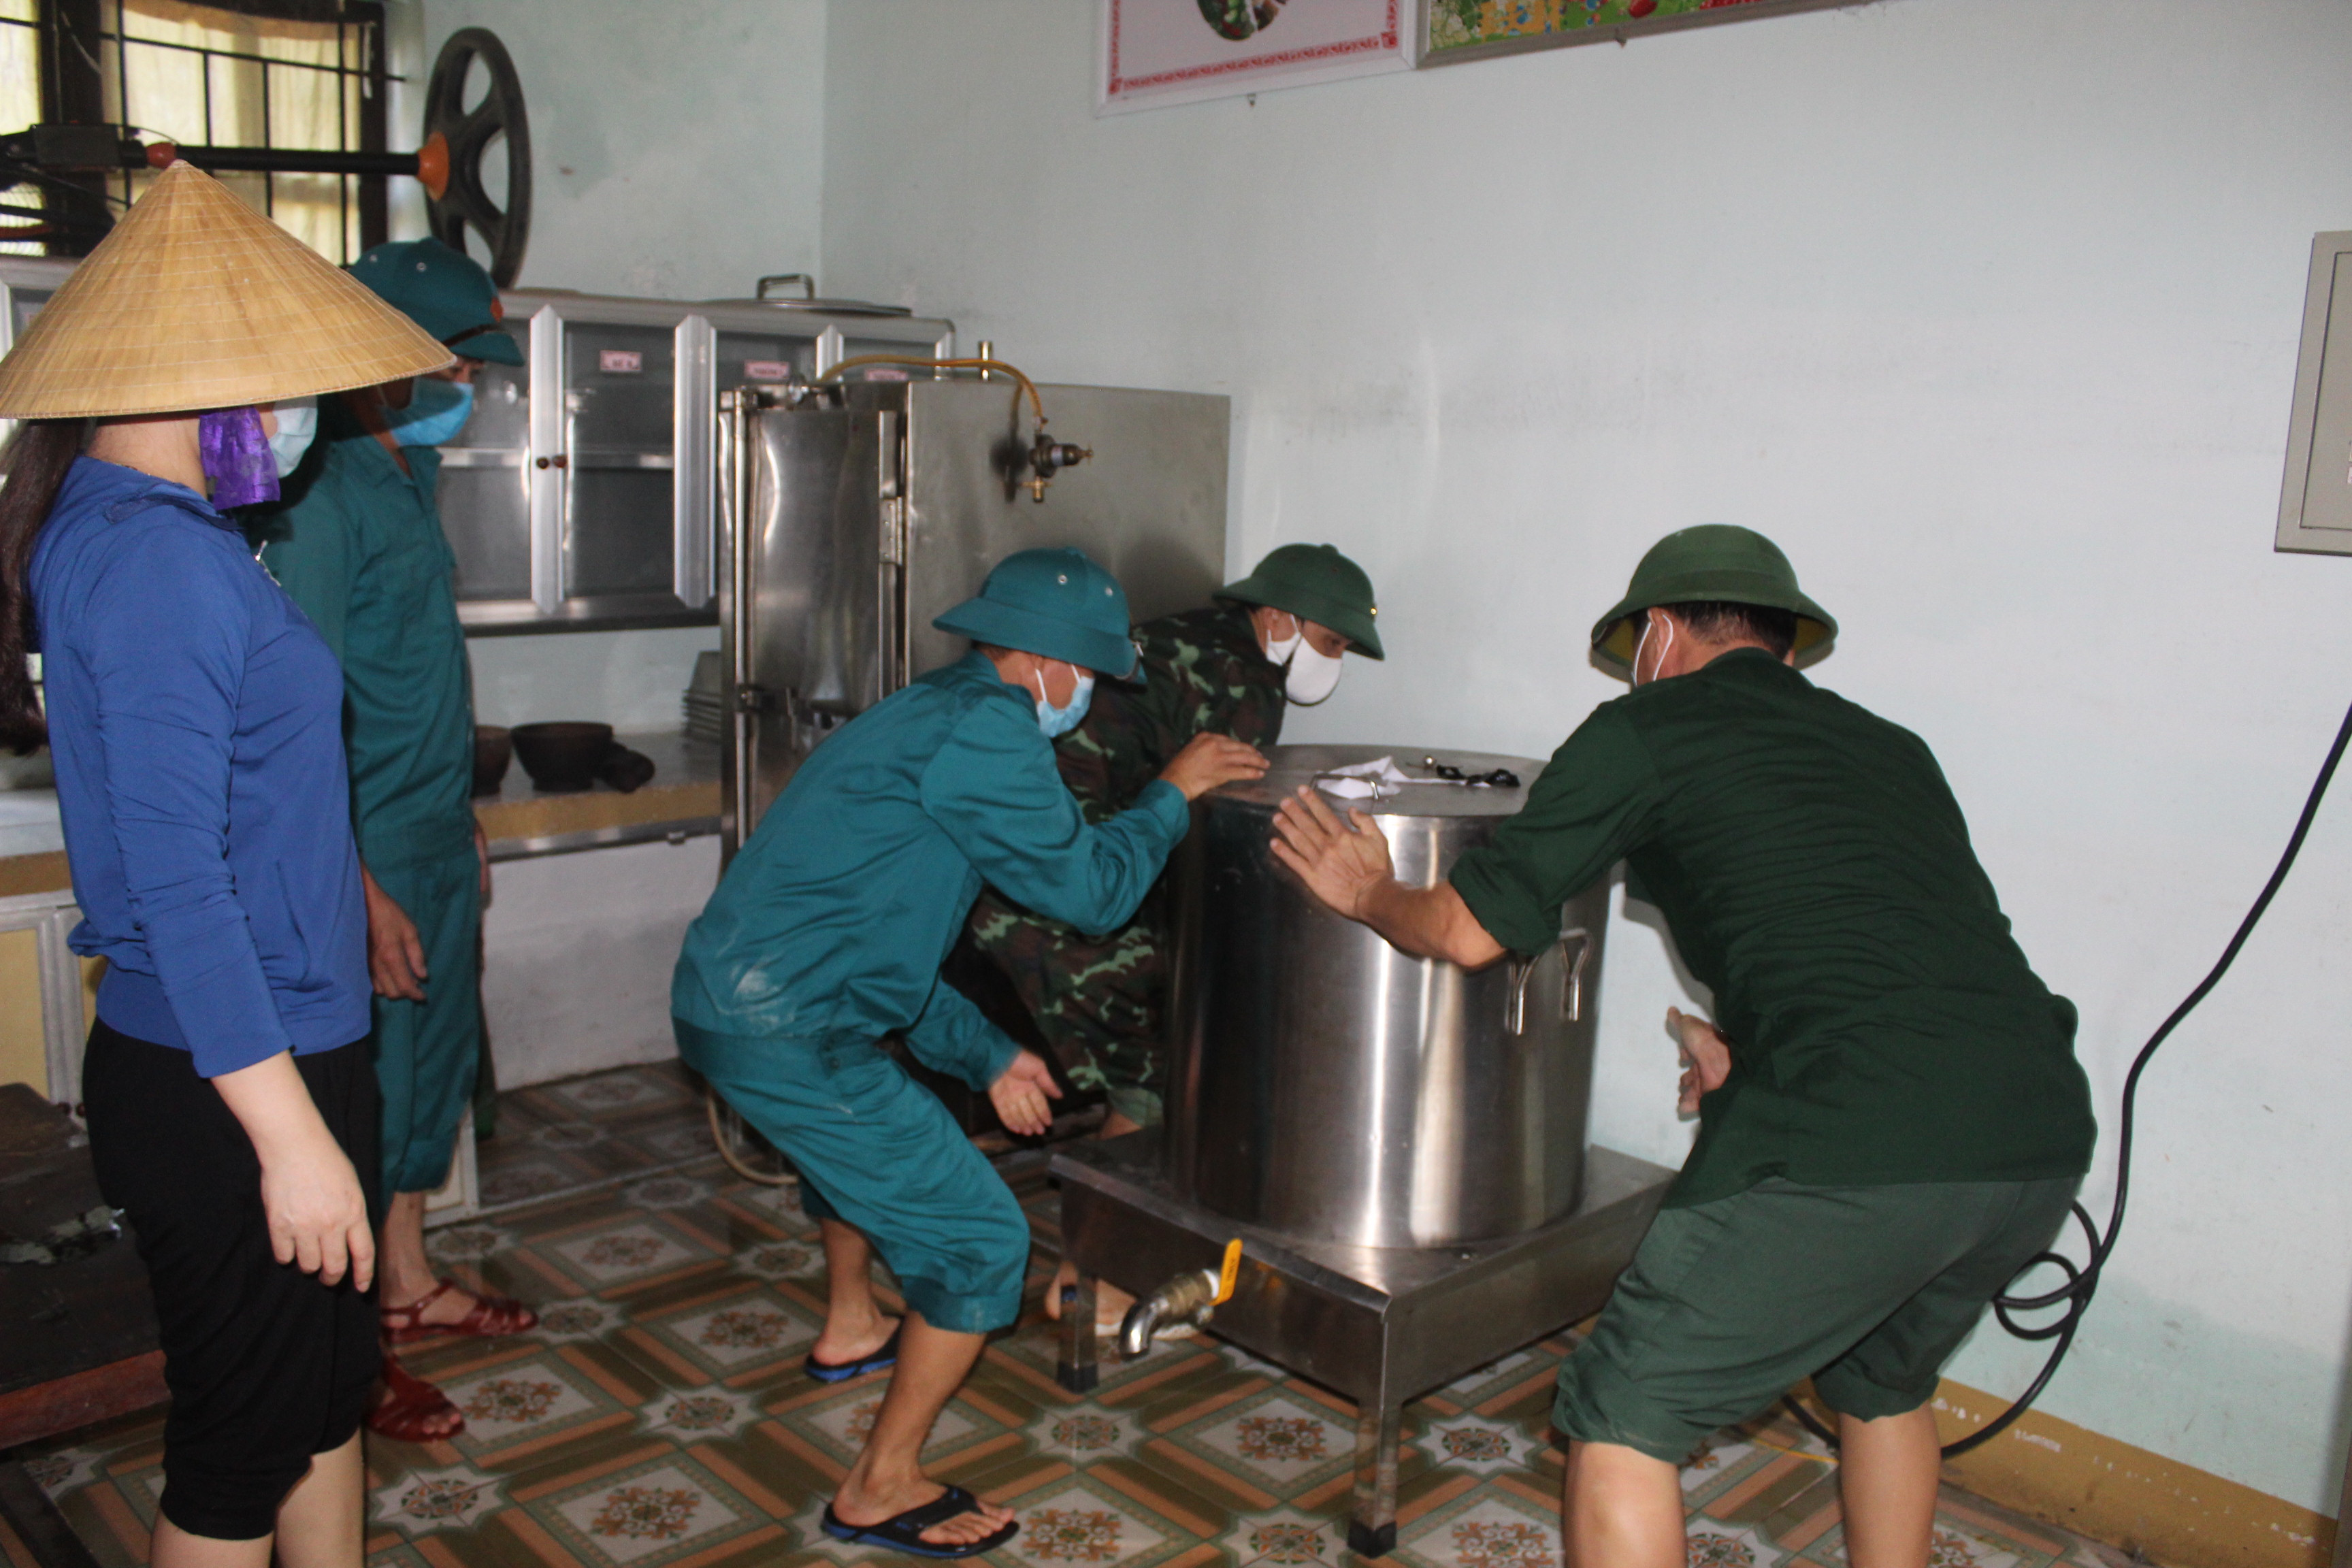 Khu vực nhà ăn của trường mầm non Quỳnh Lưu bị ngập nặng làm hư hỏng nhiều đồ dùng nấu ăn, nồi điện